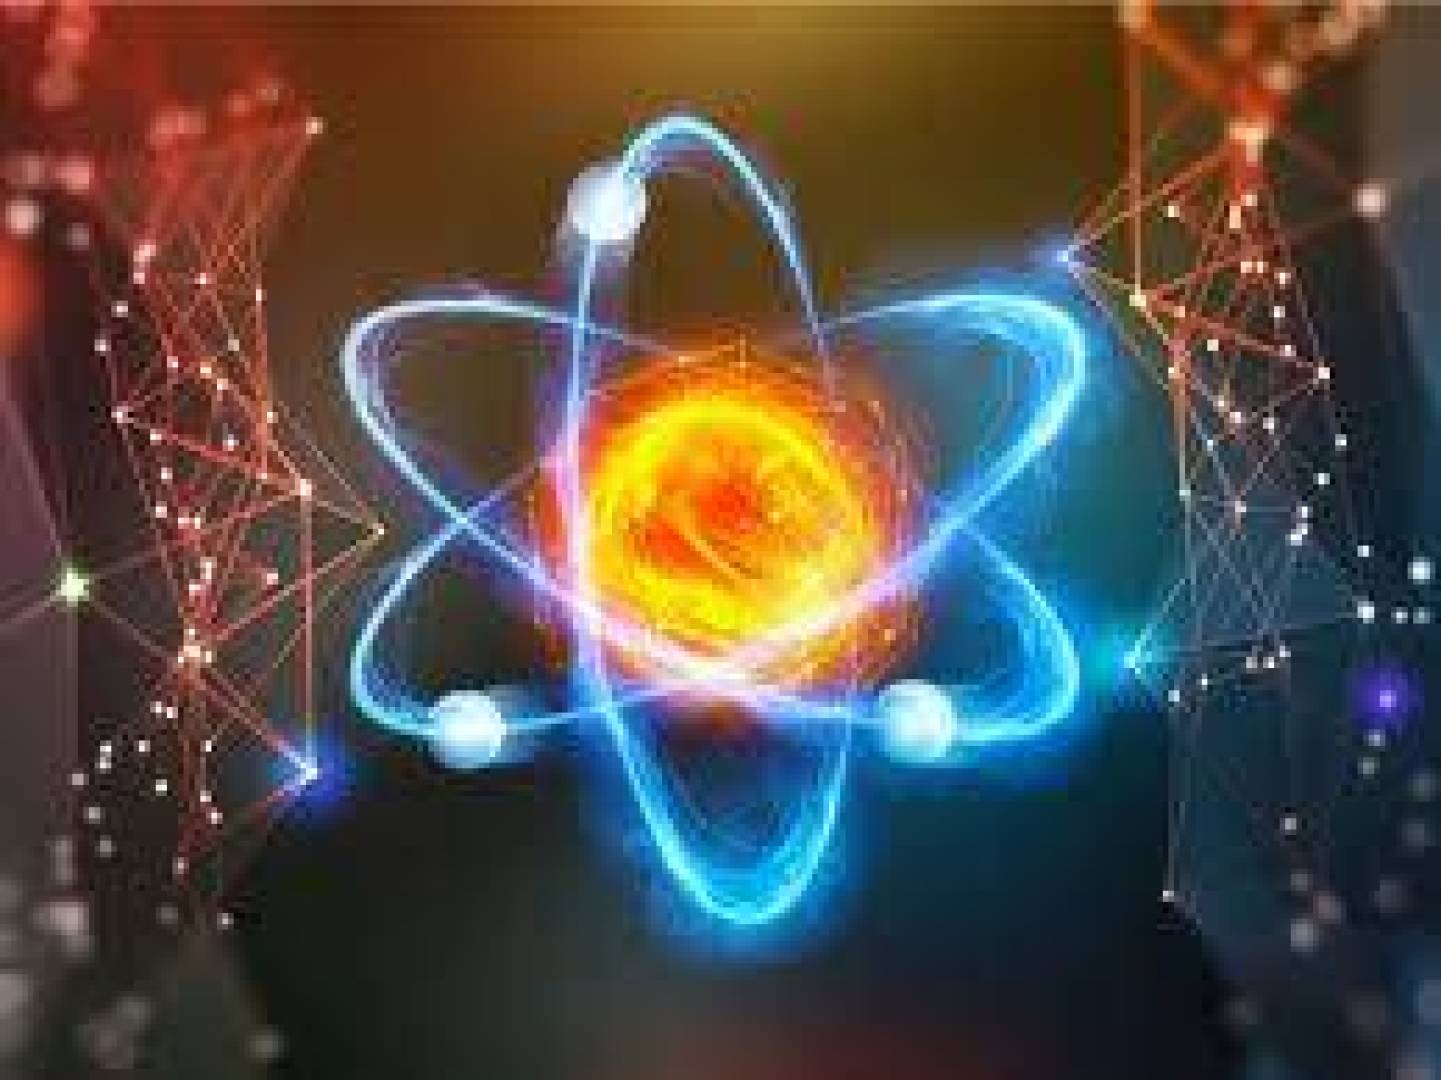 الأستاتين: أندر العناصر النووية يكتسح مسرح الاكتشافات الجديدة في الفيزياء